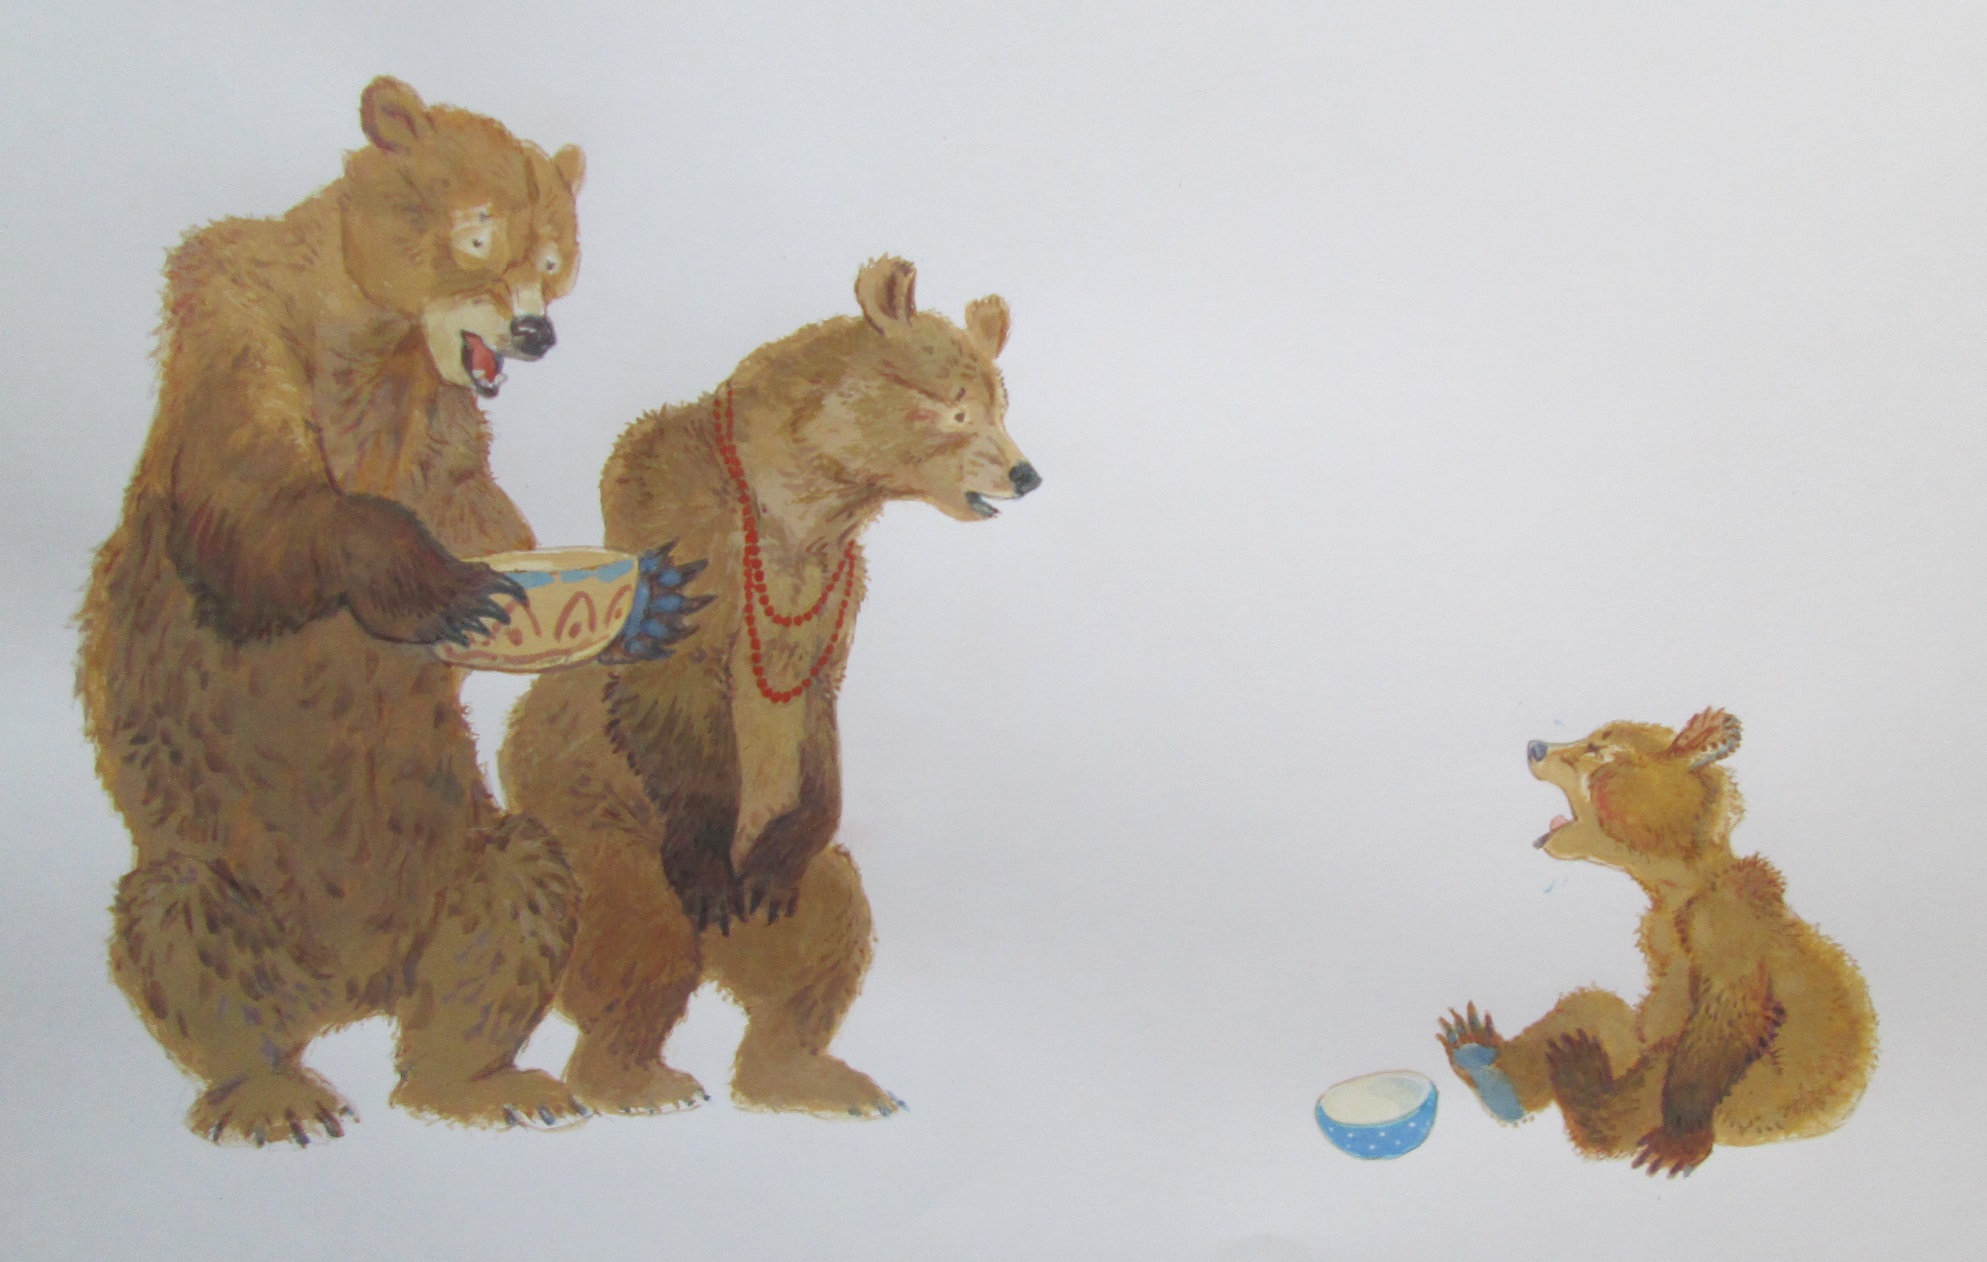 Три медведя представляют. Три медведя. Три медведя иллюстрации. Три медведя на белом фоне. Иллюстрация 3 медведя.